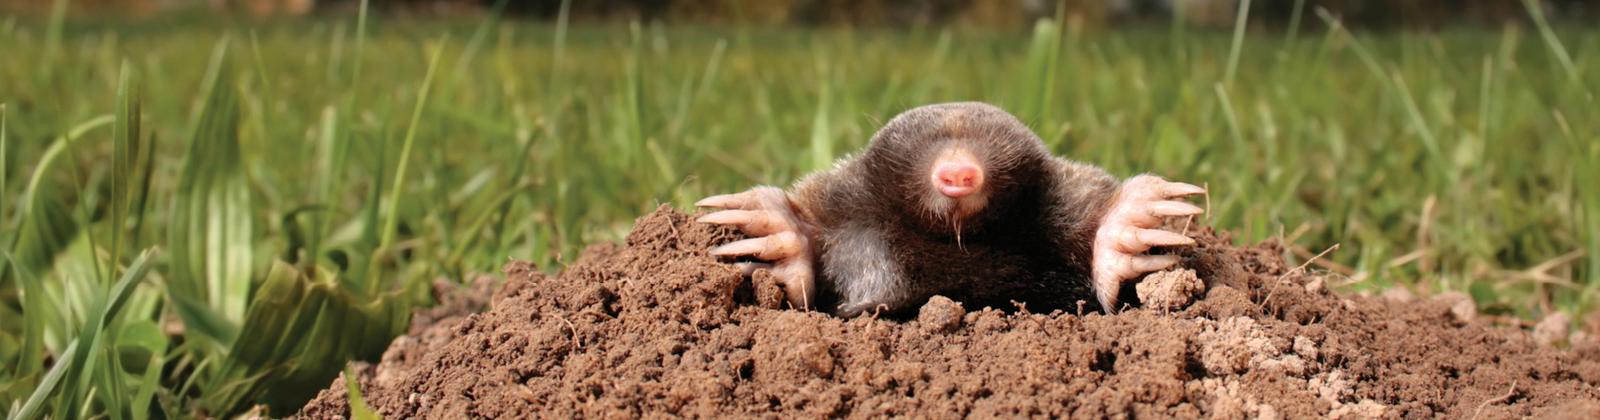 Mole Control Near Me: Natural Mole Repellent for Lawns